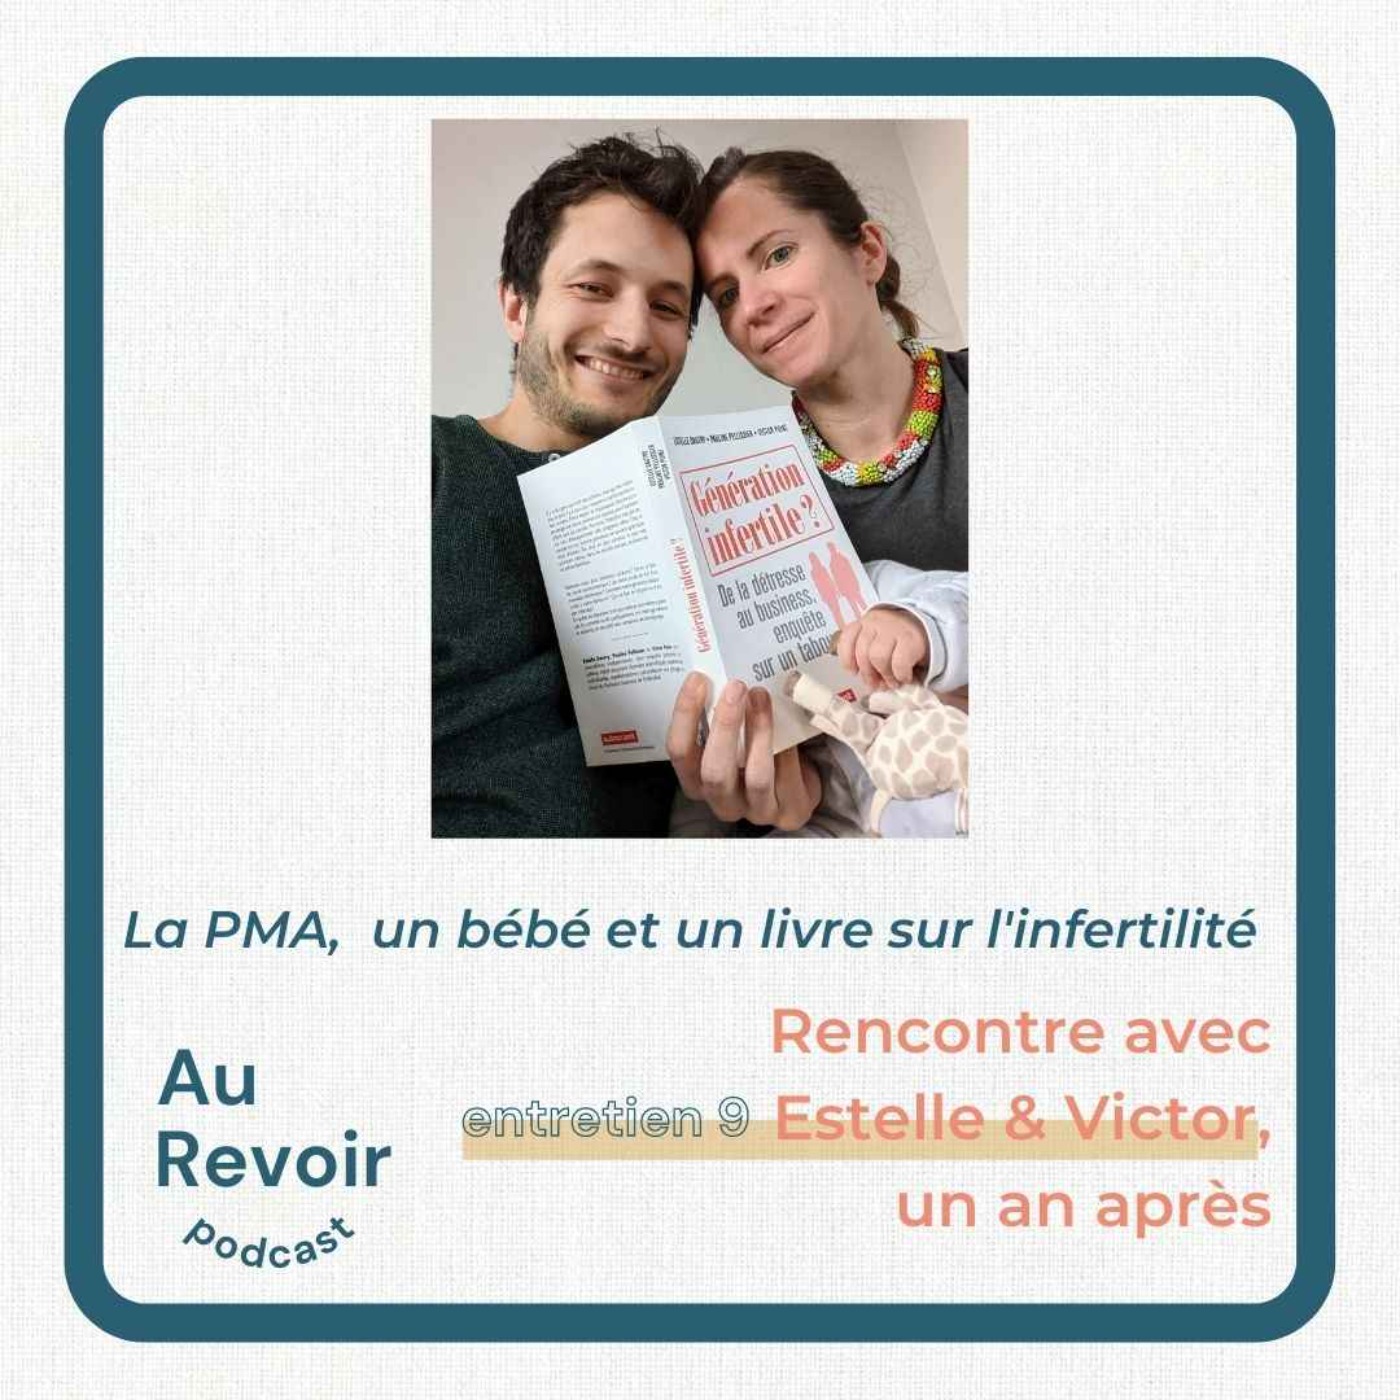 Entretien #9 avec Estelle Dautry et Victor Point : la PMA, un bébé et un livre sur l'infertilité